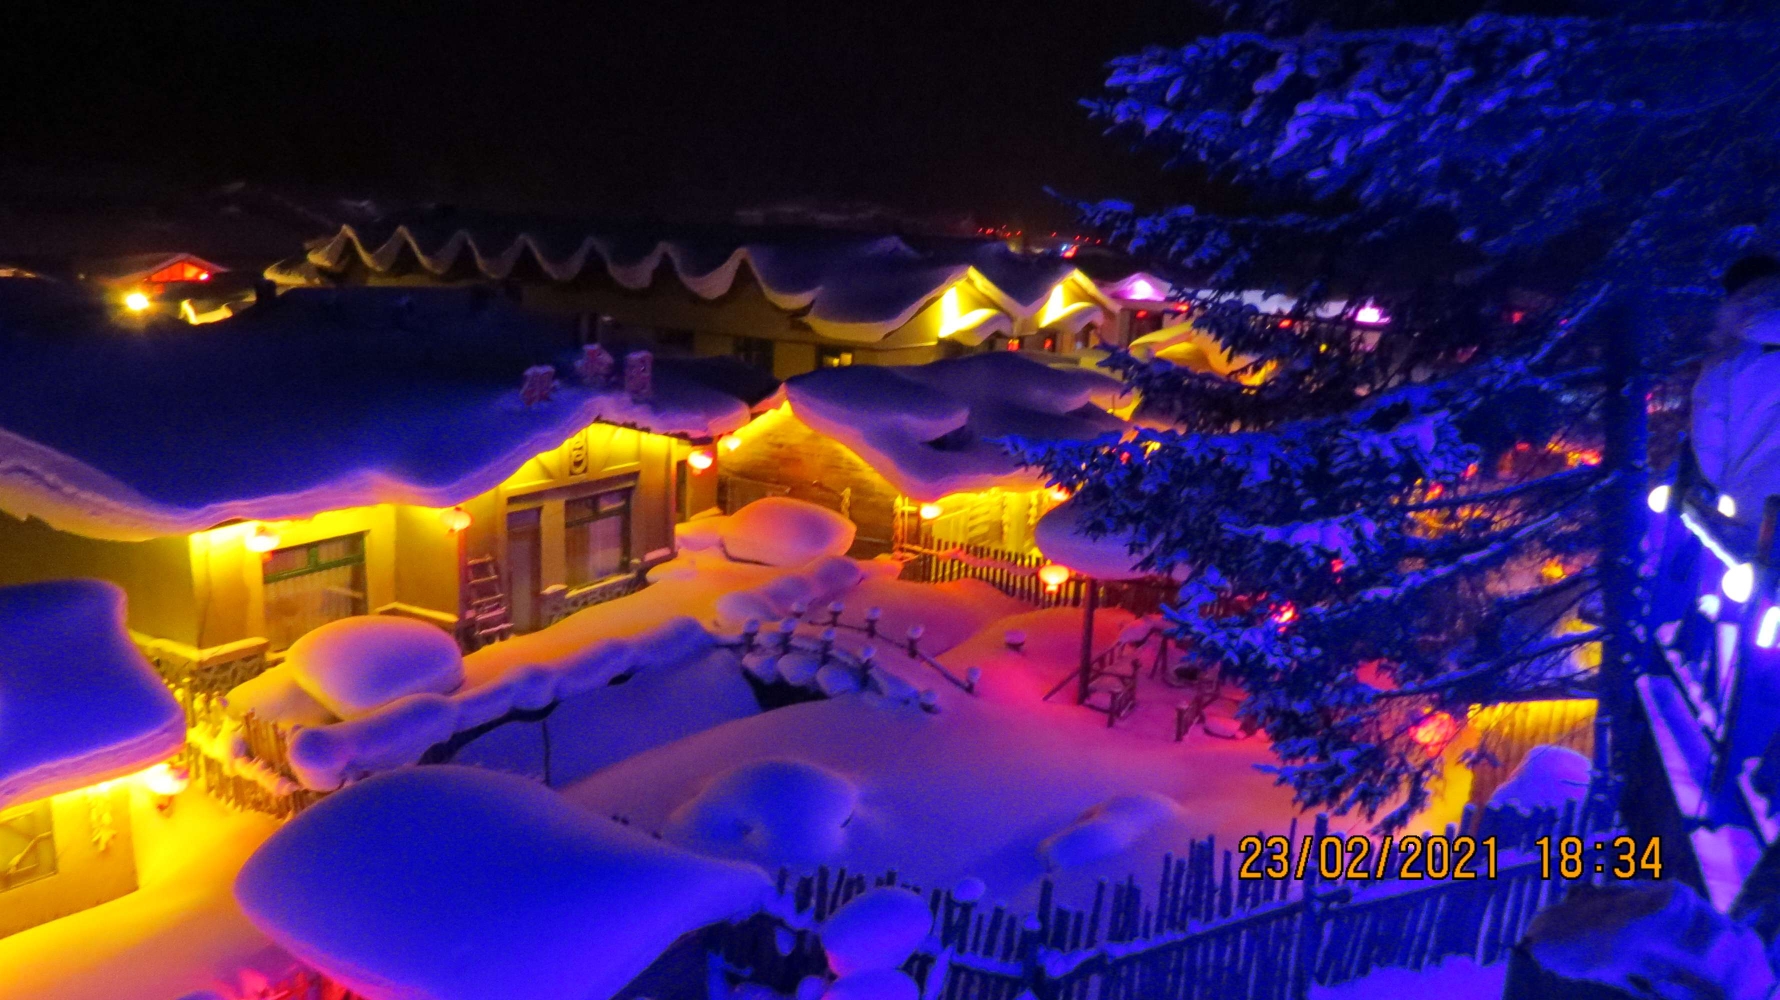 千姿百态,雪乡的夜景尤为美丽夜晚的雪屋就是童话世界